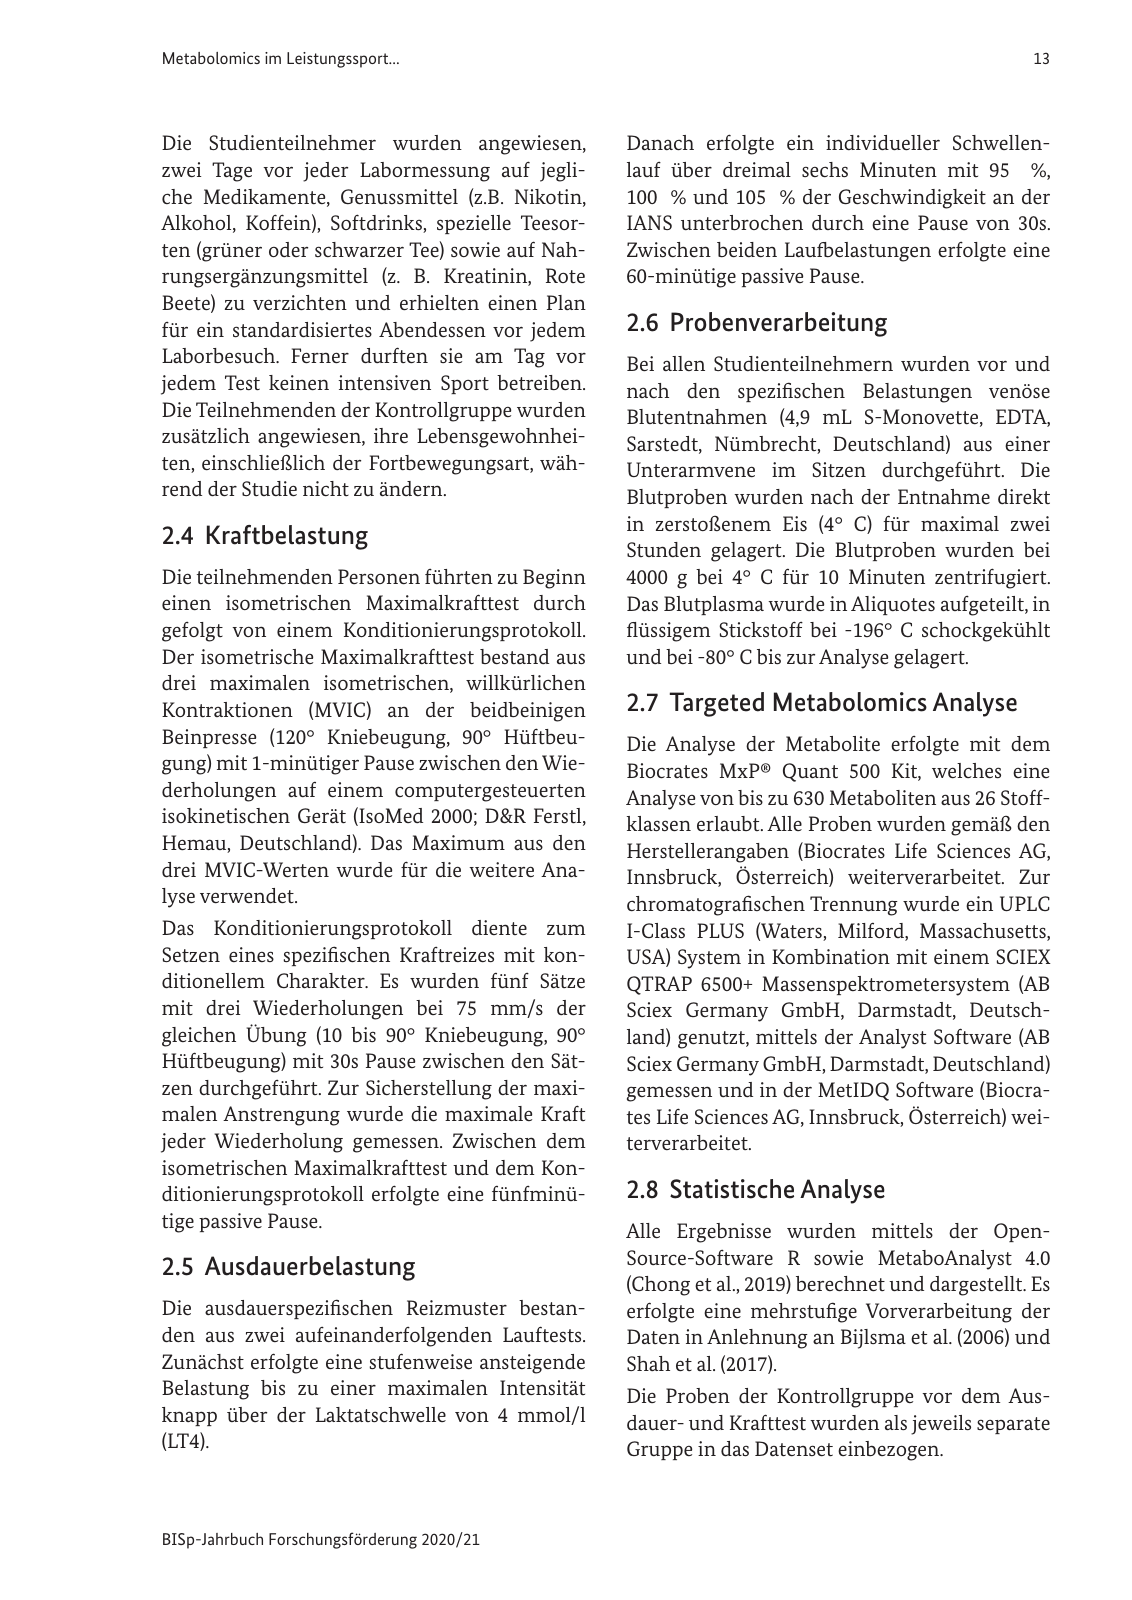 Vorschau BISp-Jahrbuch 2020/21 Seite 15